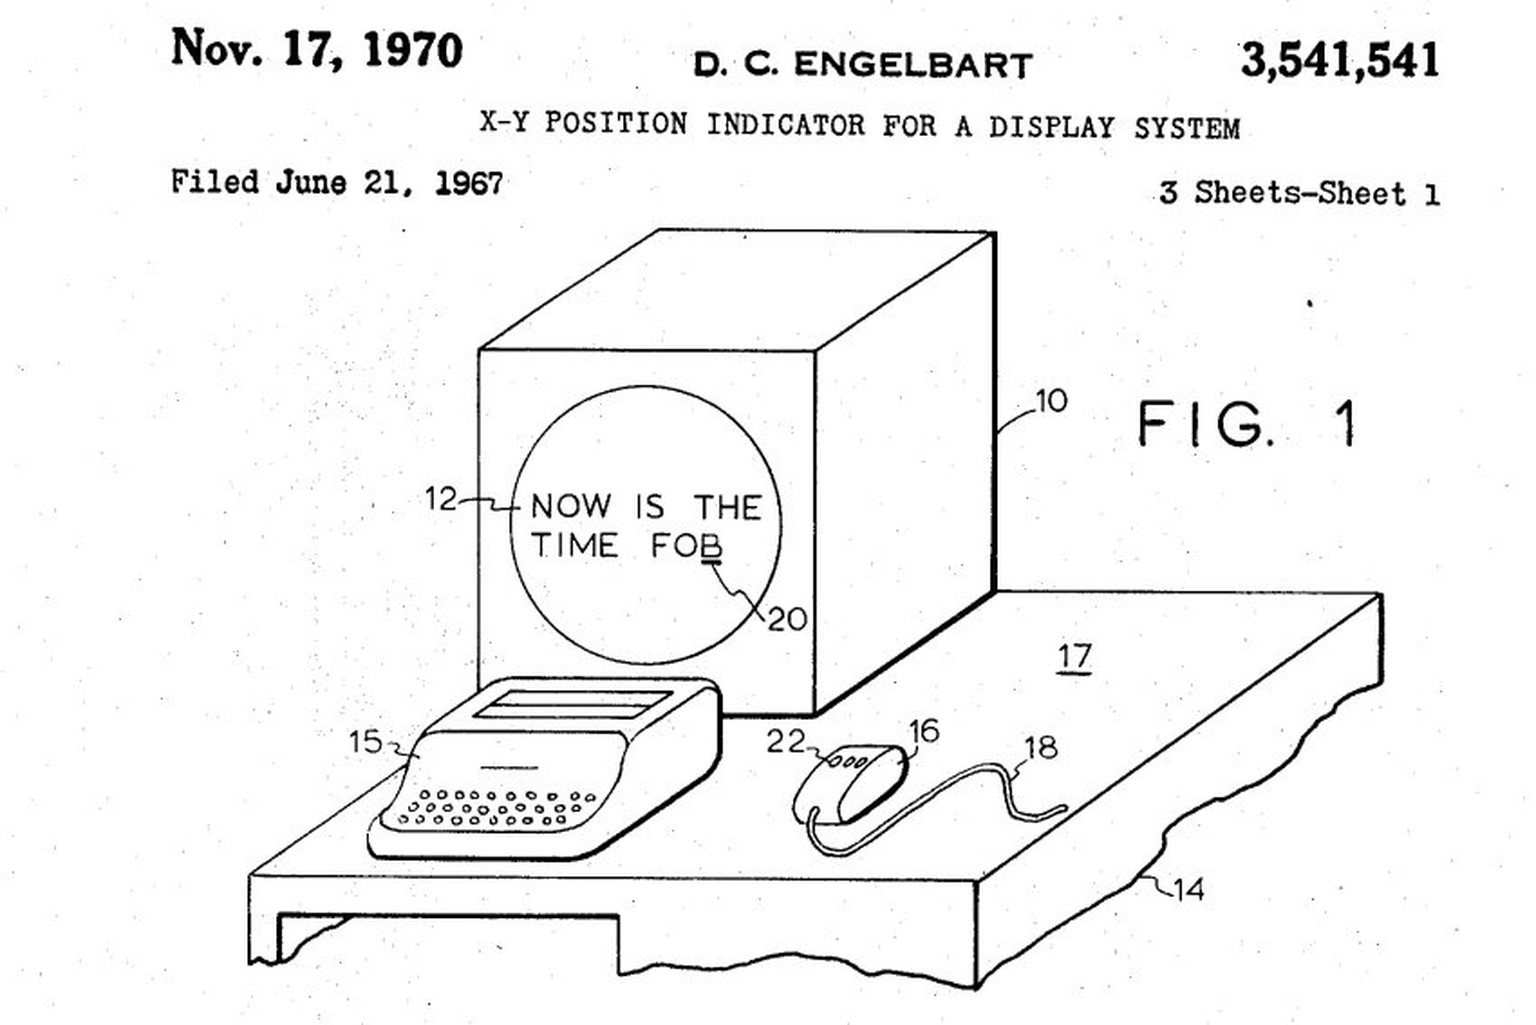 Patente: Maus - D. C. Engelbart USPTO
Diese Erfindung liegt auf fast jedem Schreibtisch: 1967 beantragte Douglas Engelbart das Patent für die Computermaus. Die hieß damals &quot;X-Y position indicator ...